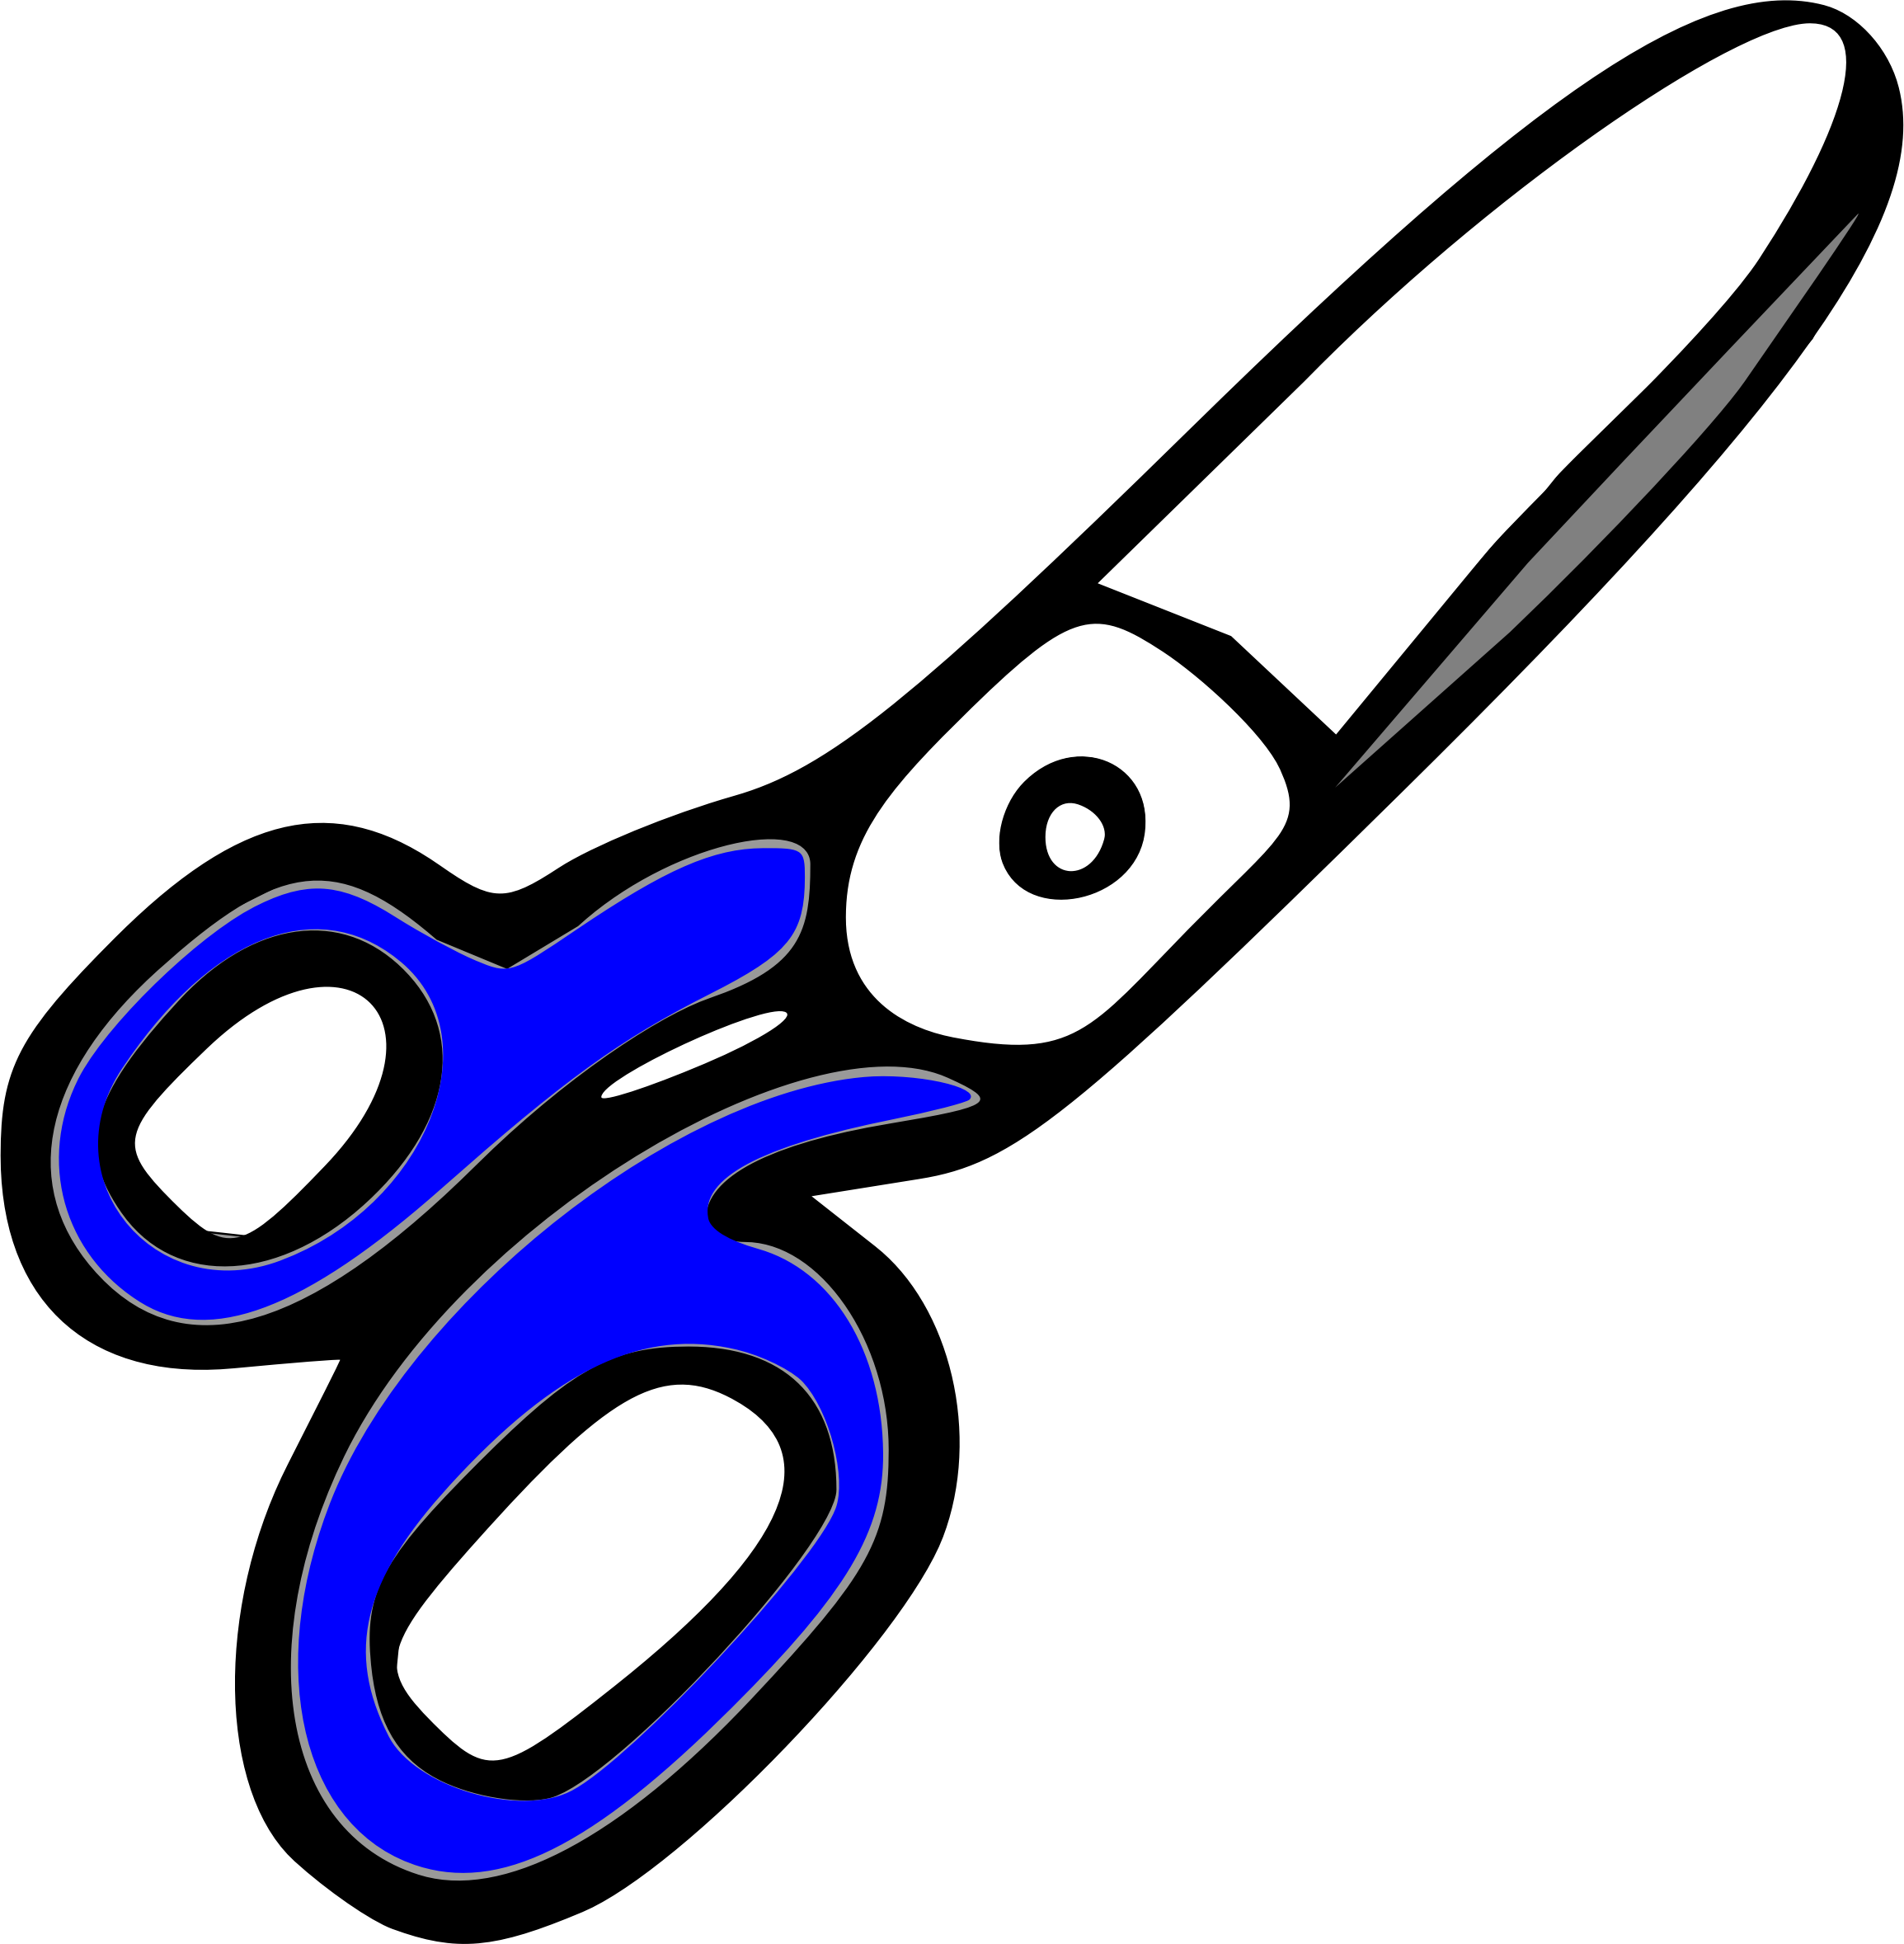 Blue scissors vector clipart image - Free stock photo - Public Domain photo  - CC0 Images